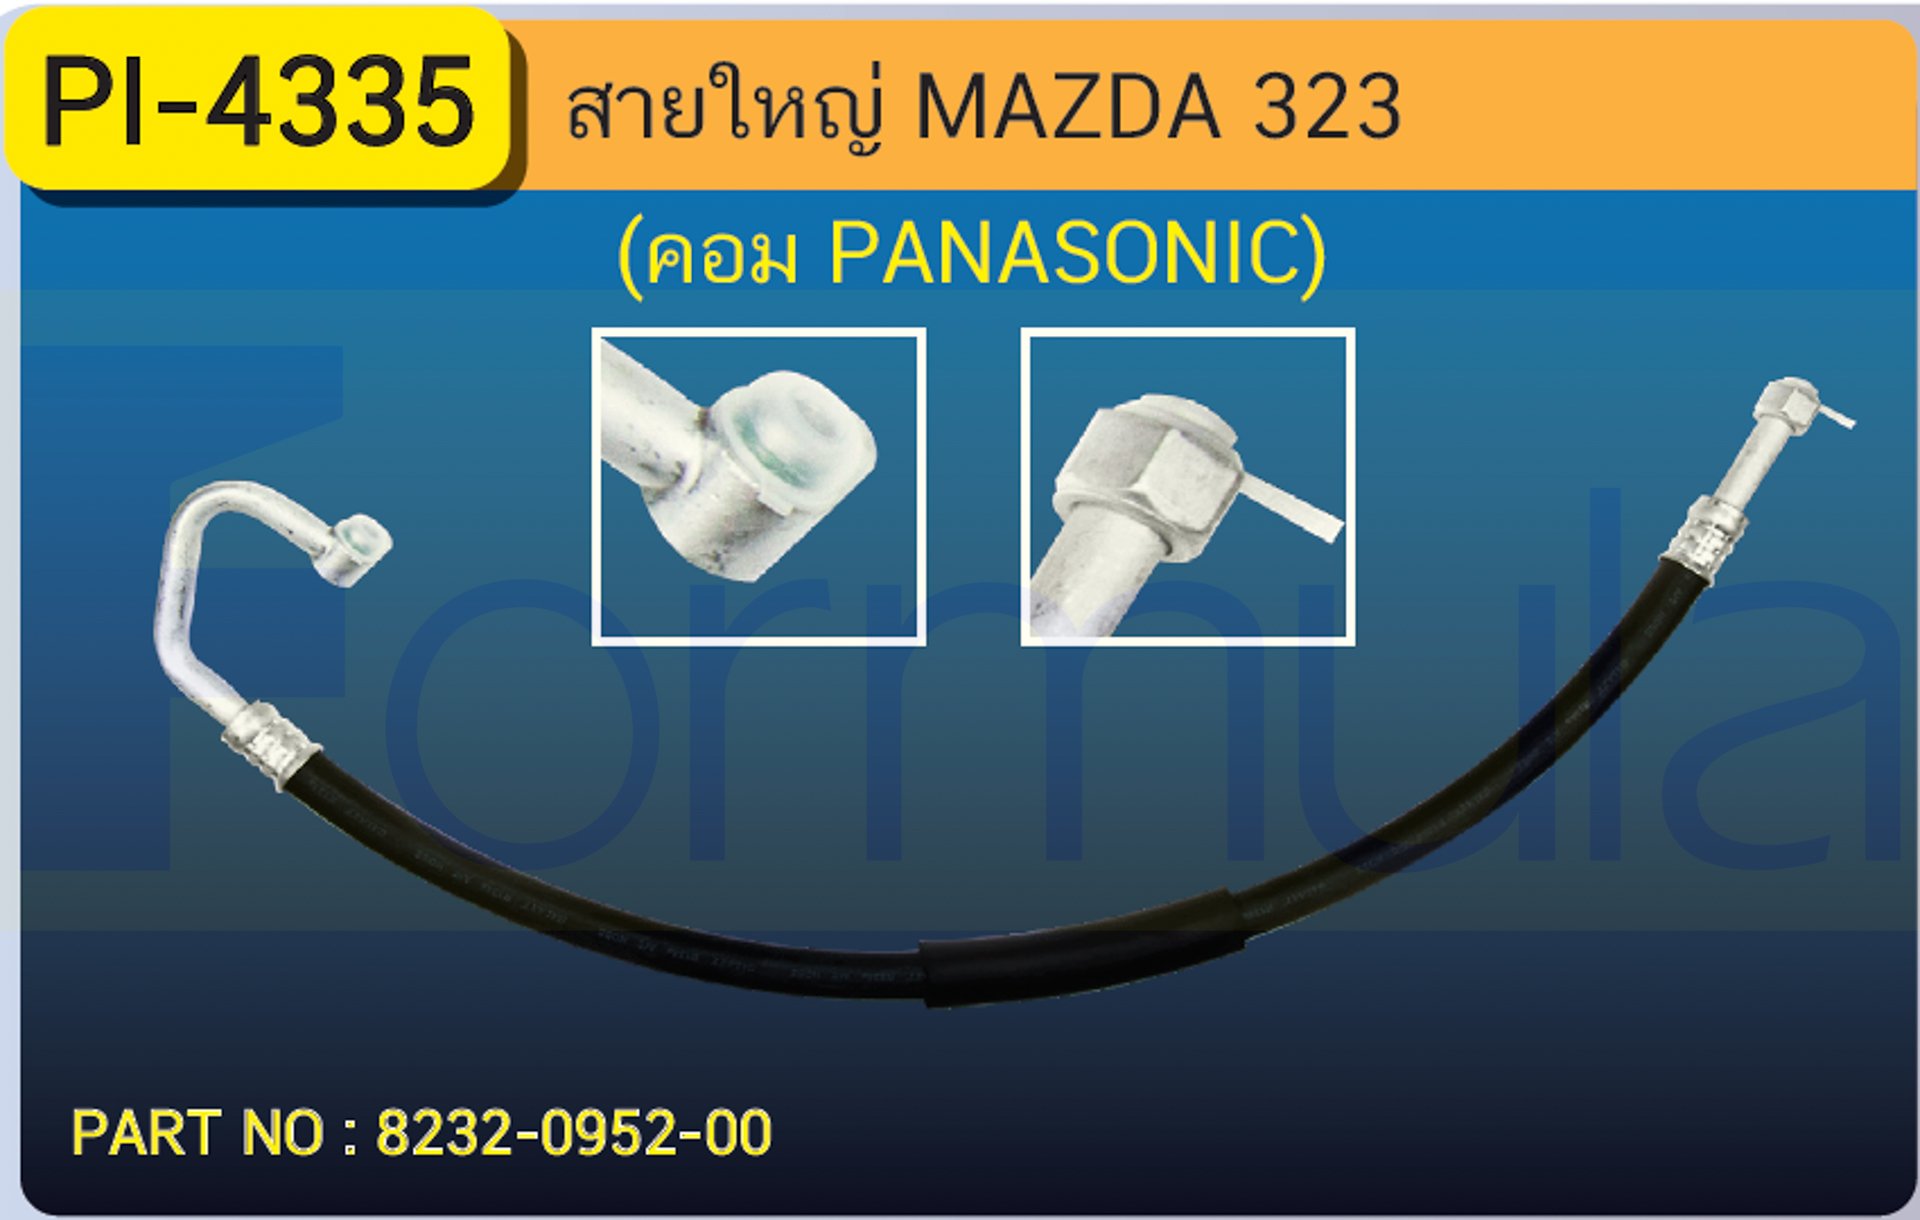 HOSE 5/8" MAZDA 323 (COMP.PANA) (134a)